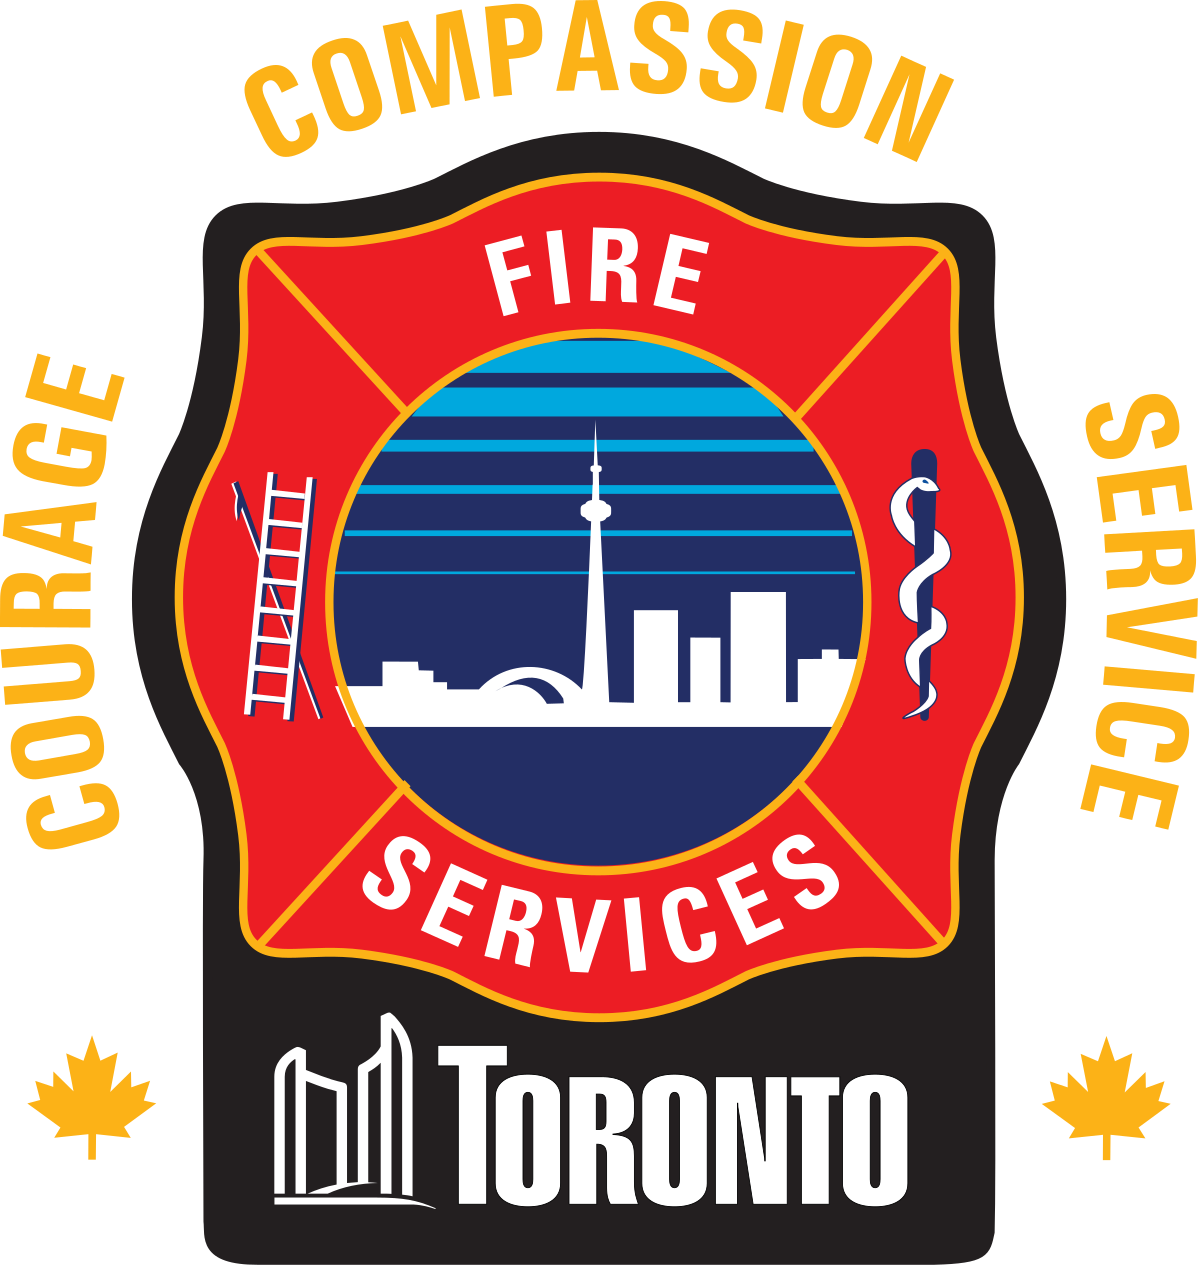 Toronto Fire logo